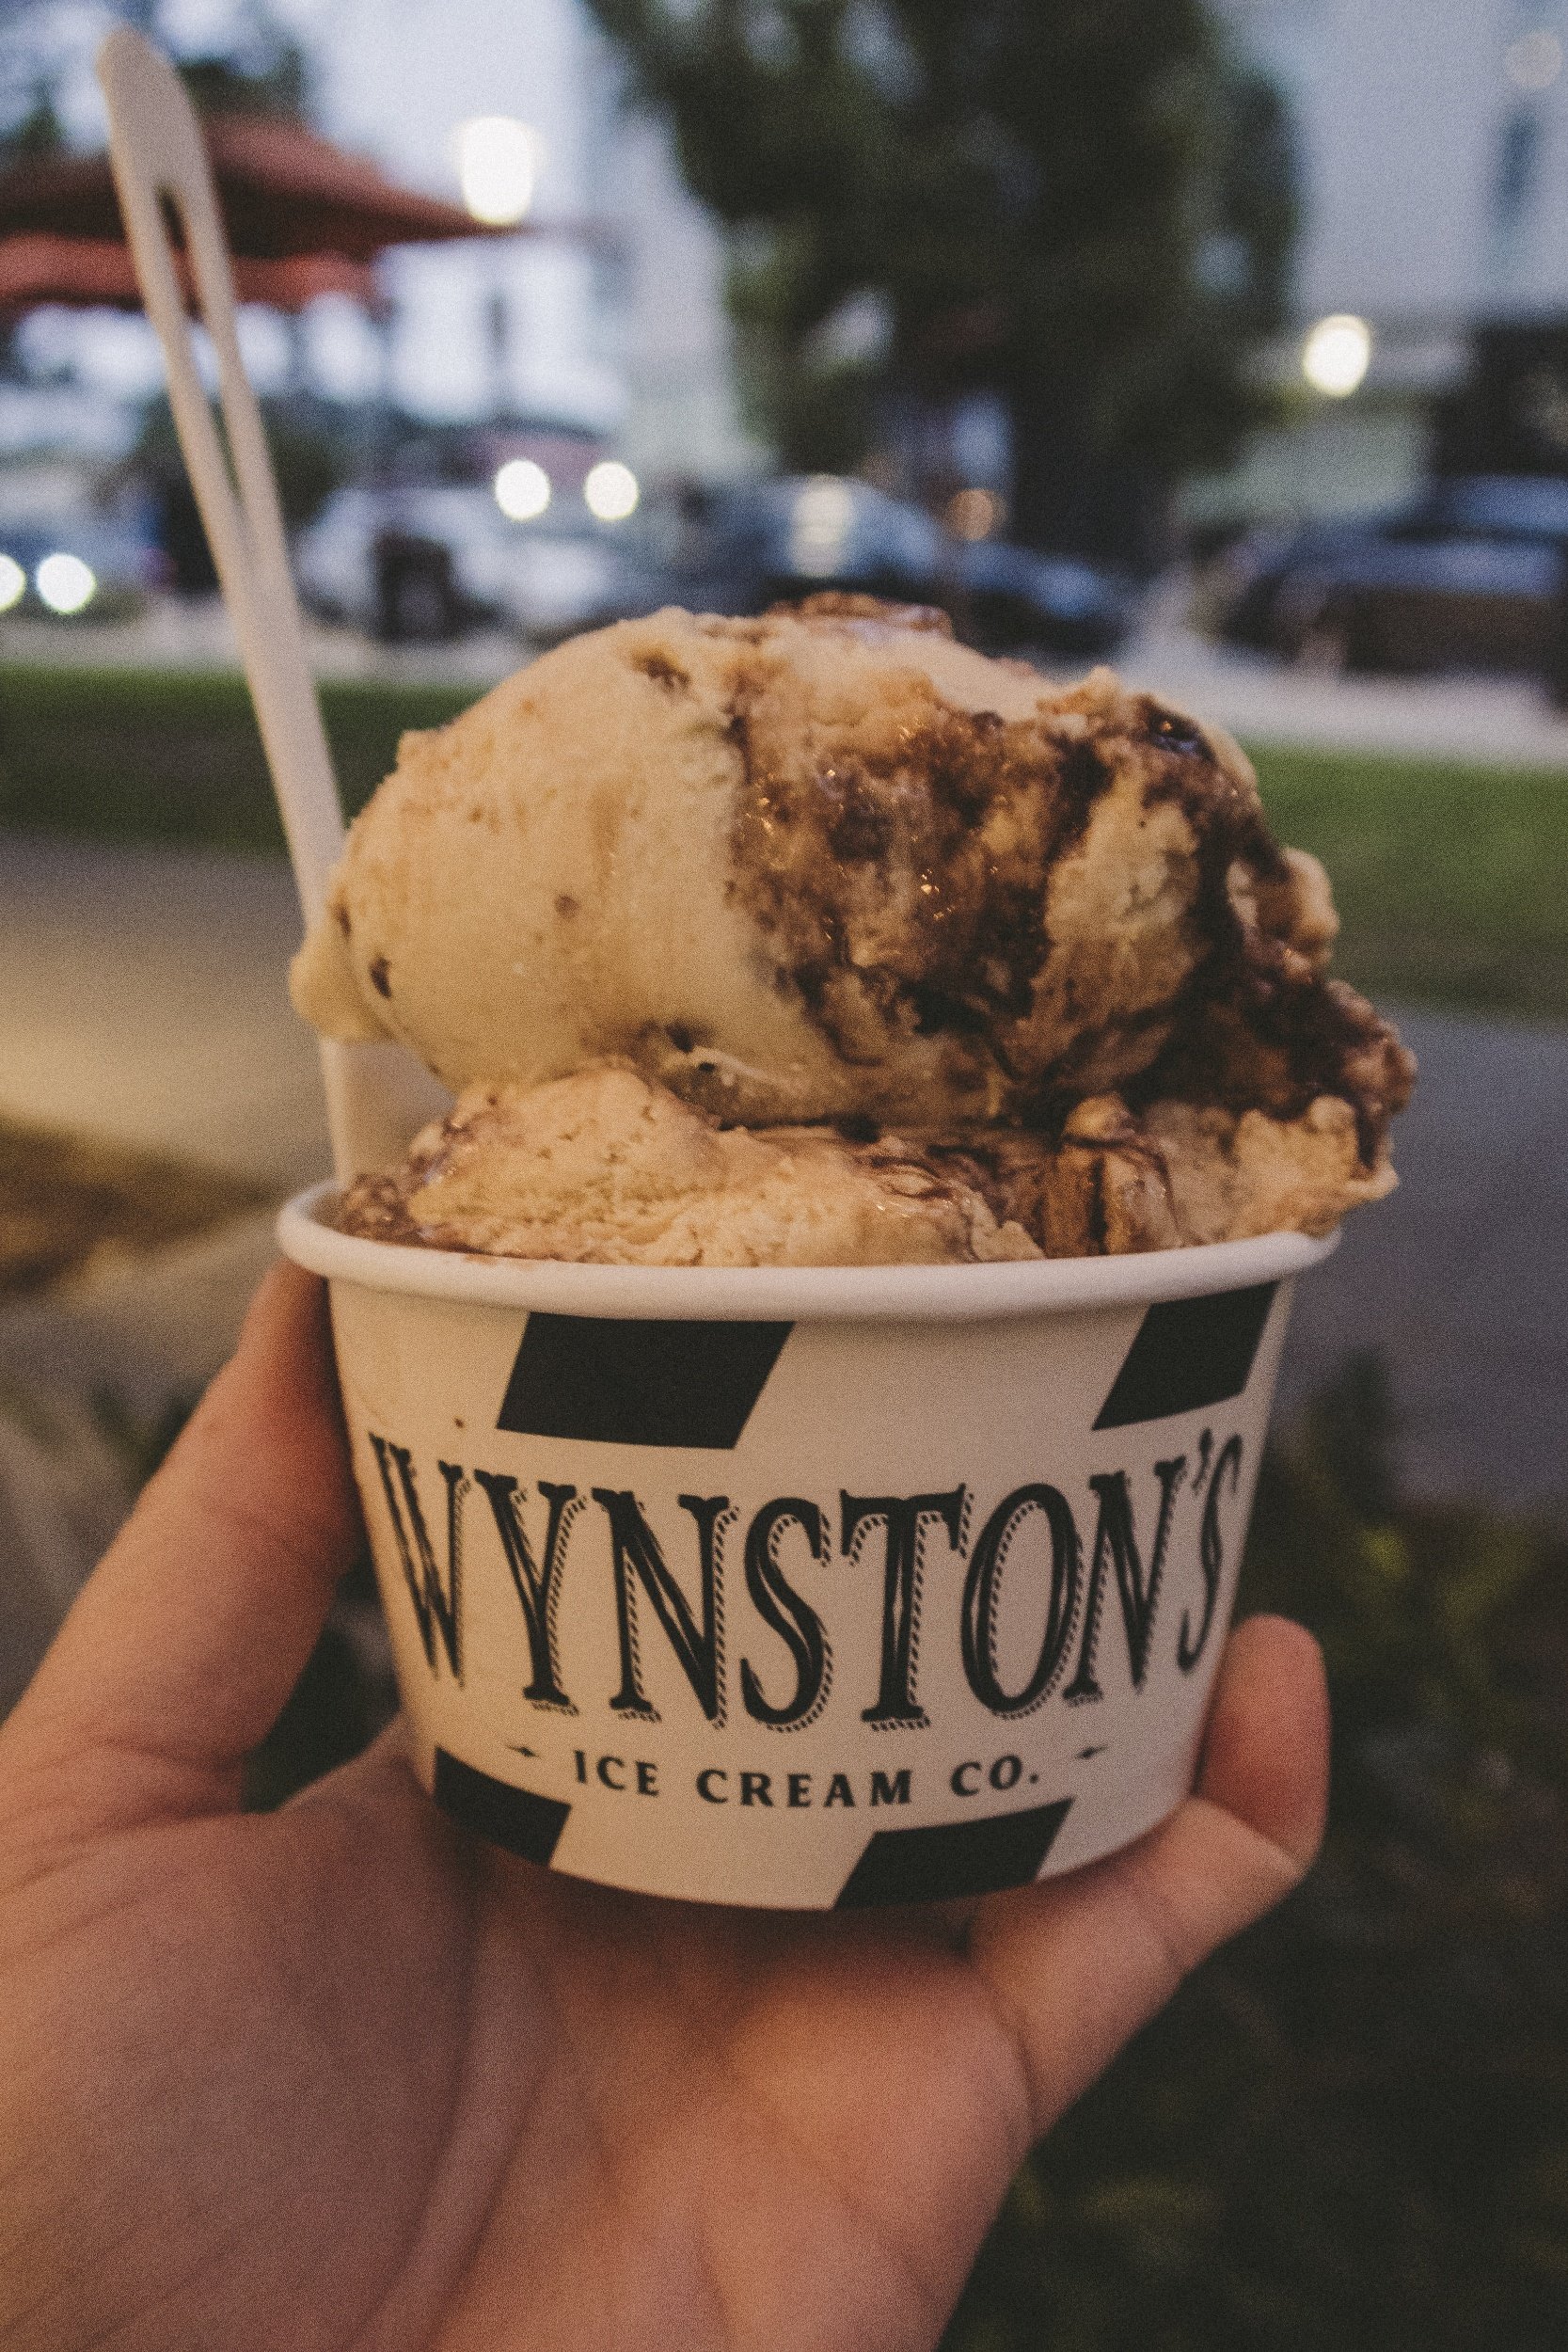 Wynston's